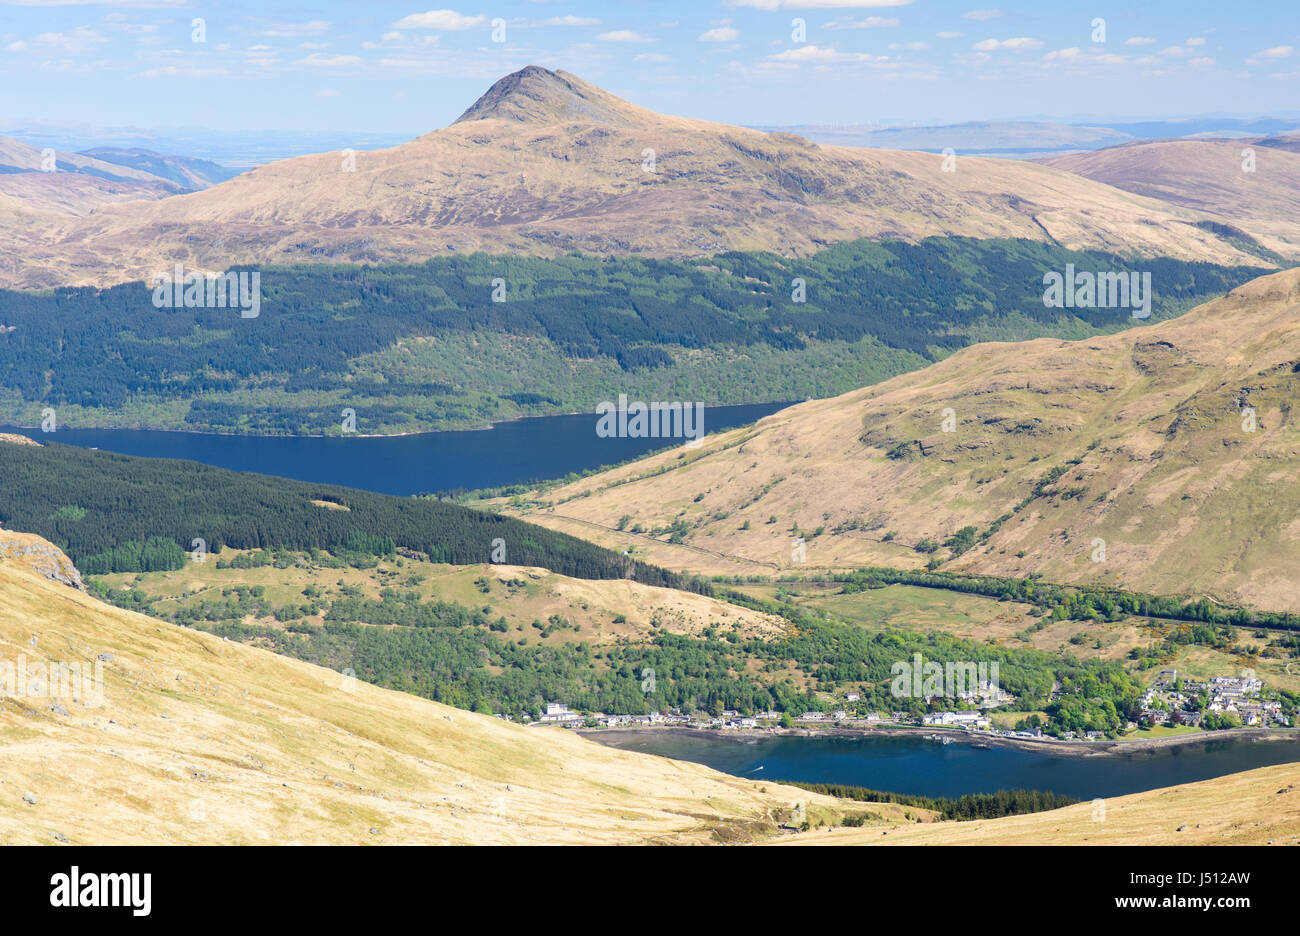 Las laderas boscosas de la montaña Ben Lomond, lugar de las orillas del lago Loch Lomond, más allá de Arrochar Village, en el South West Highlands de Escocia. Foto de stock